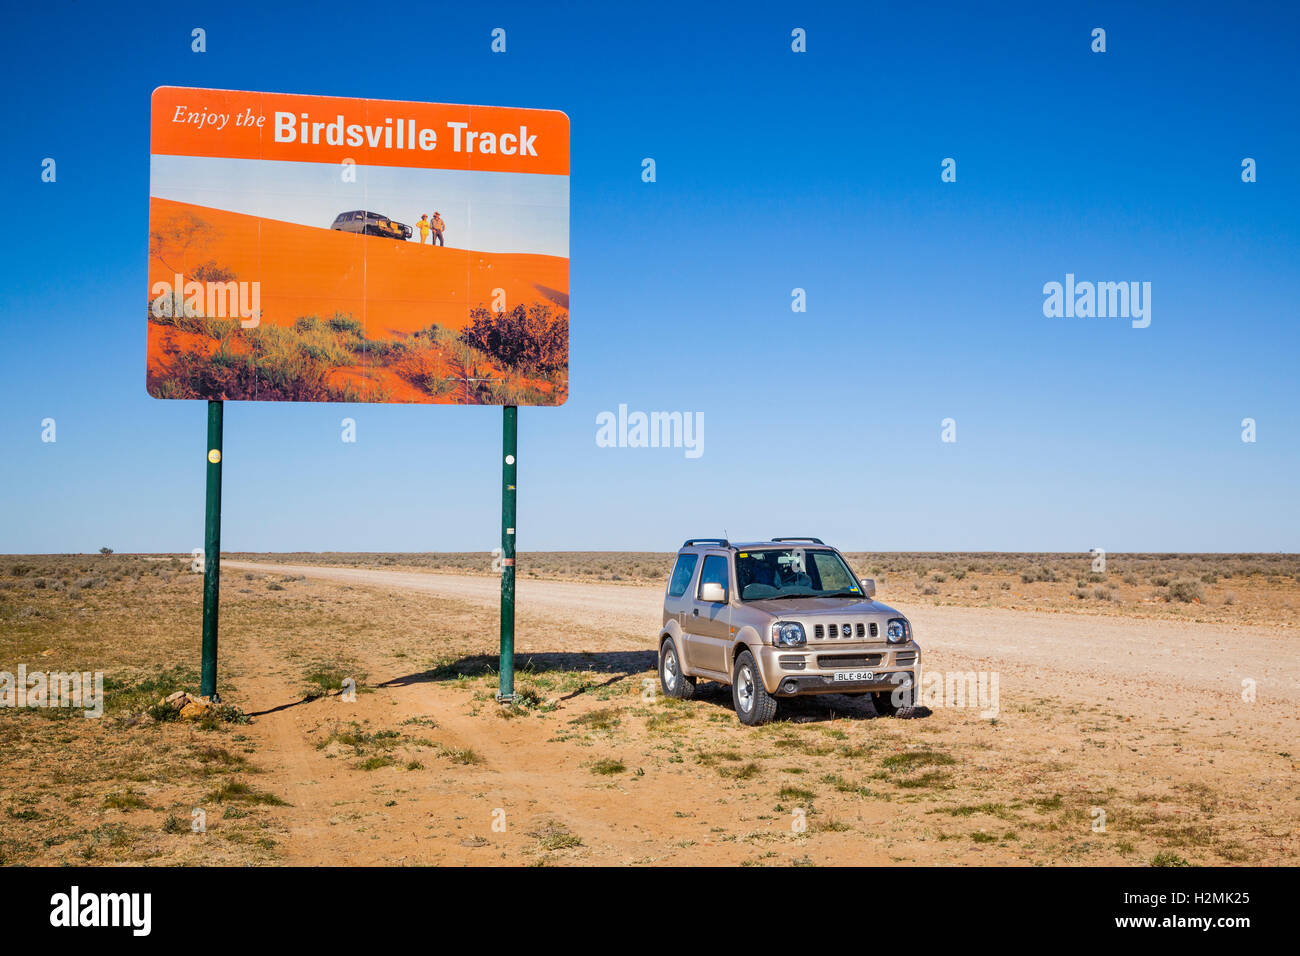 Birdsville Track through Sturt Stony Desert, stockroute from Birdville in QLD to the railhead in Marree South Australia Stock Photo